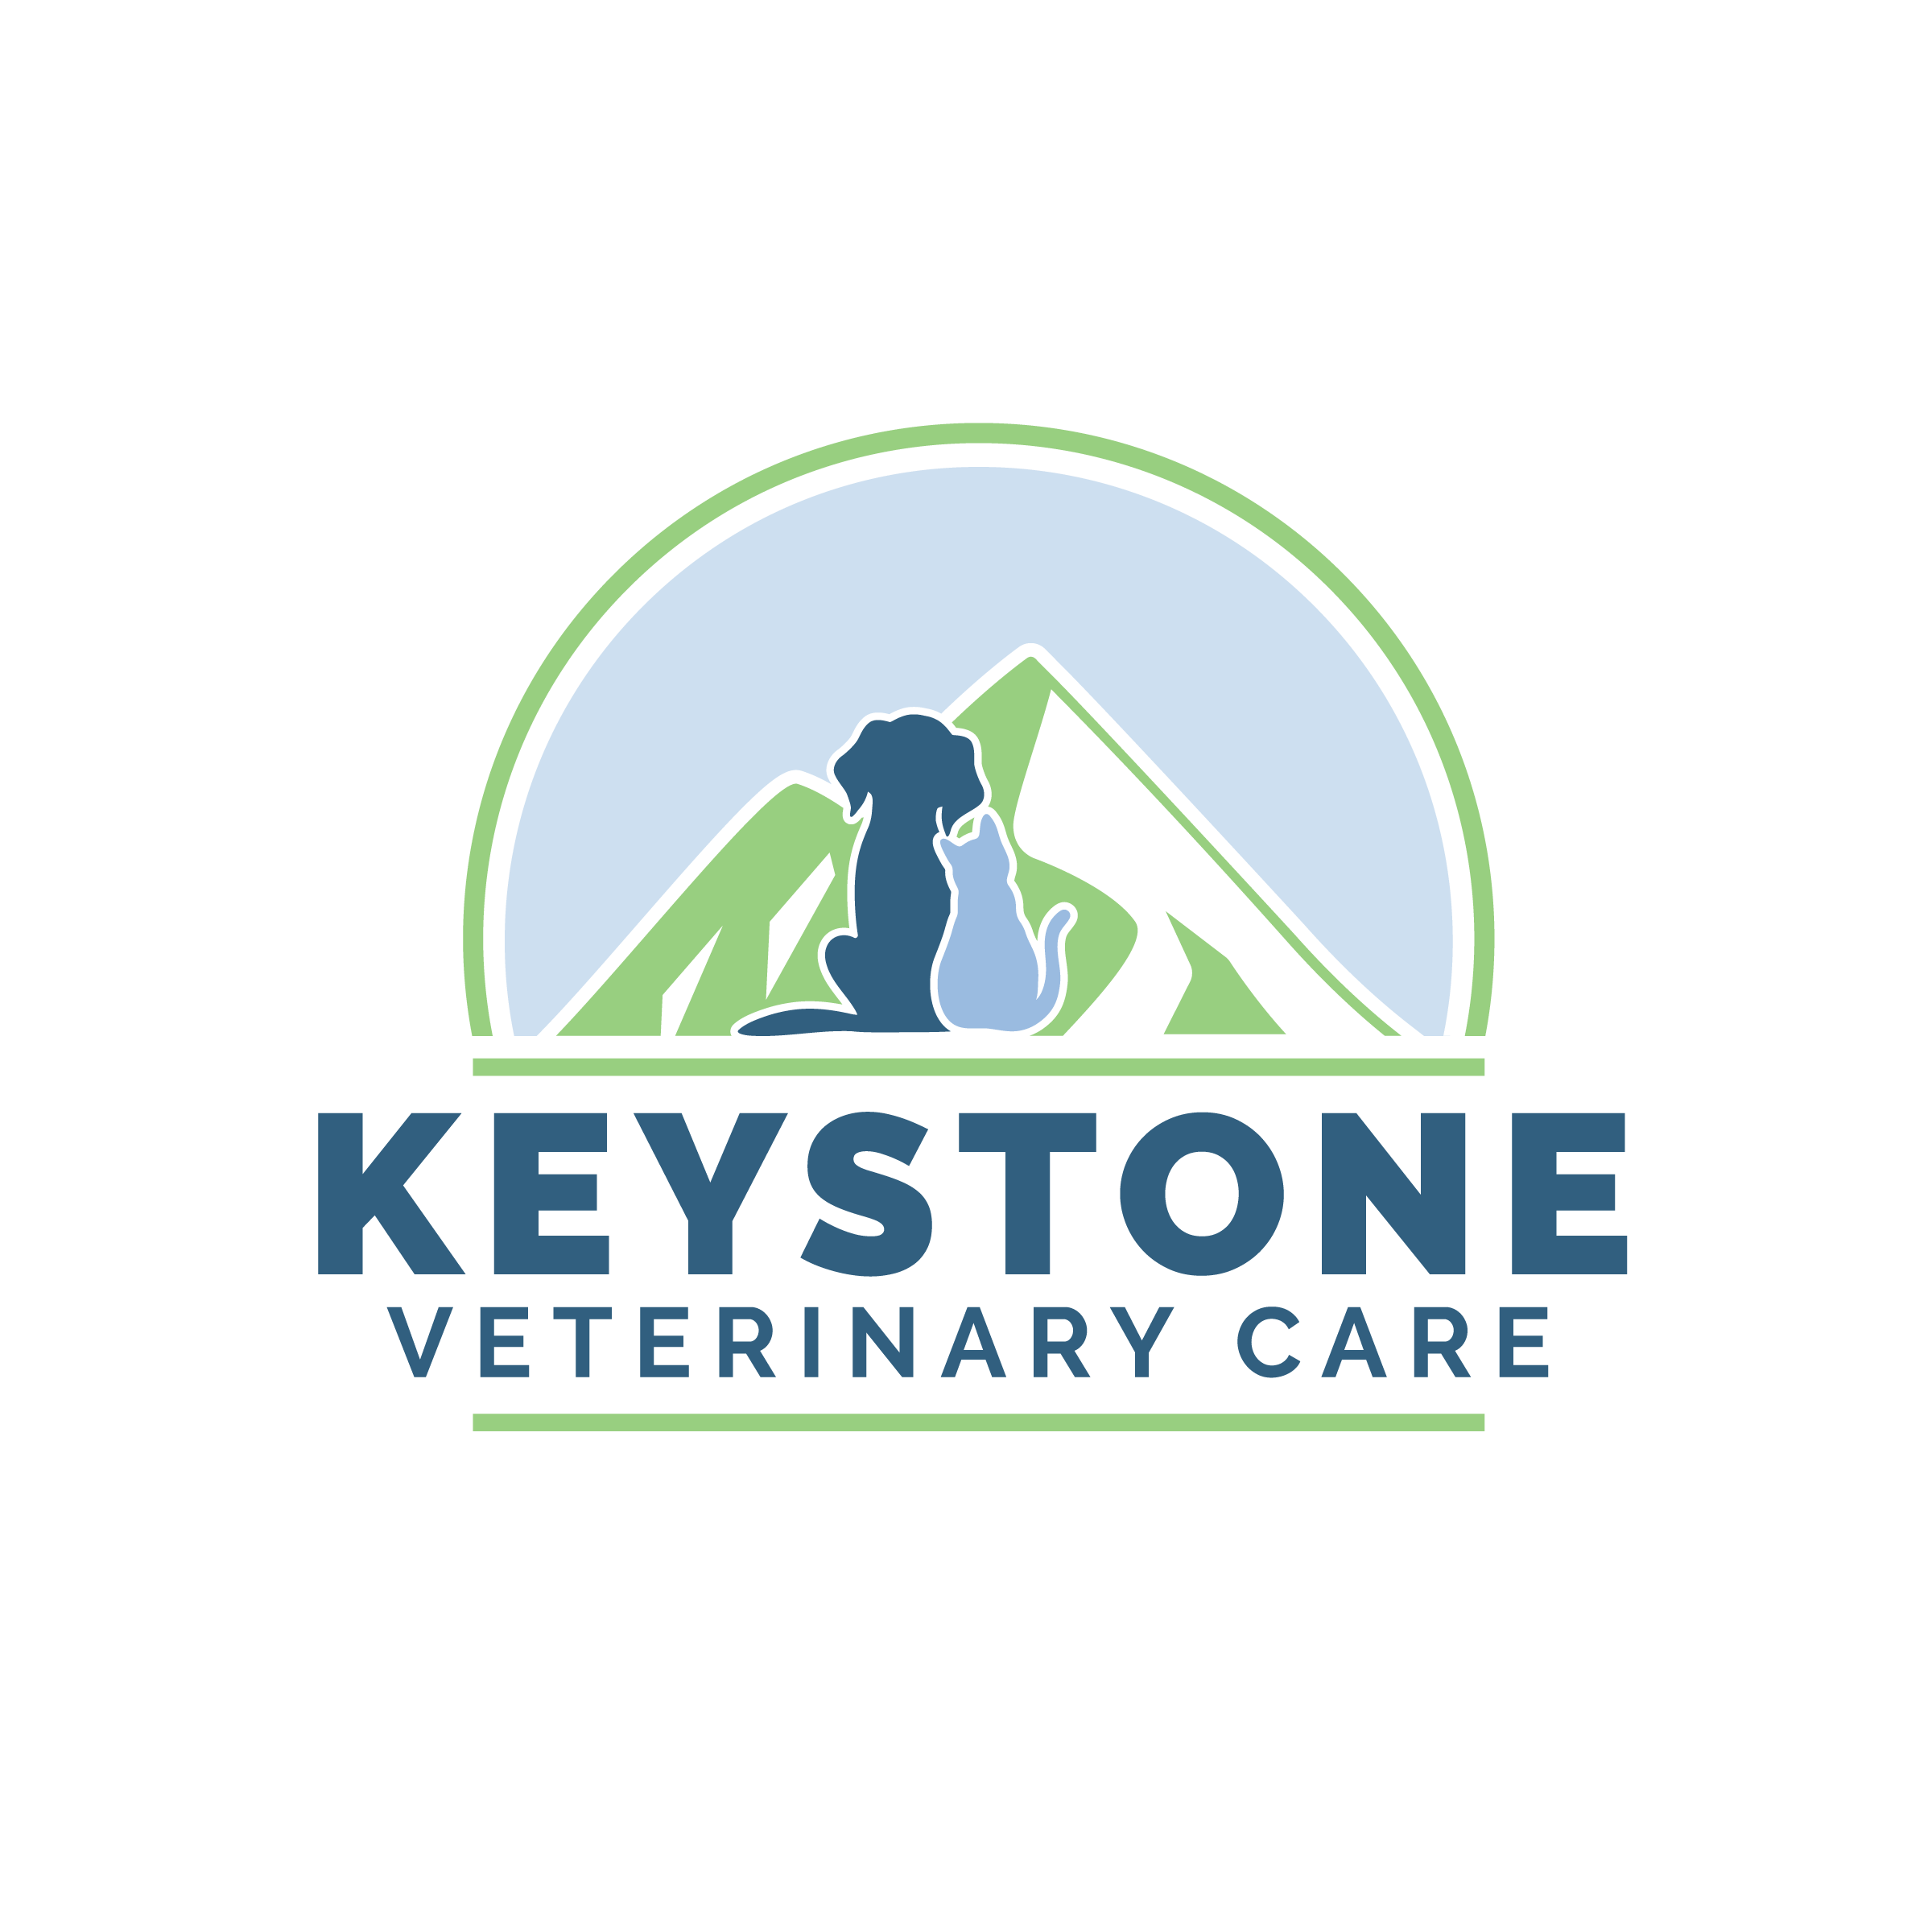 Keystone Veterinary Care